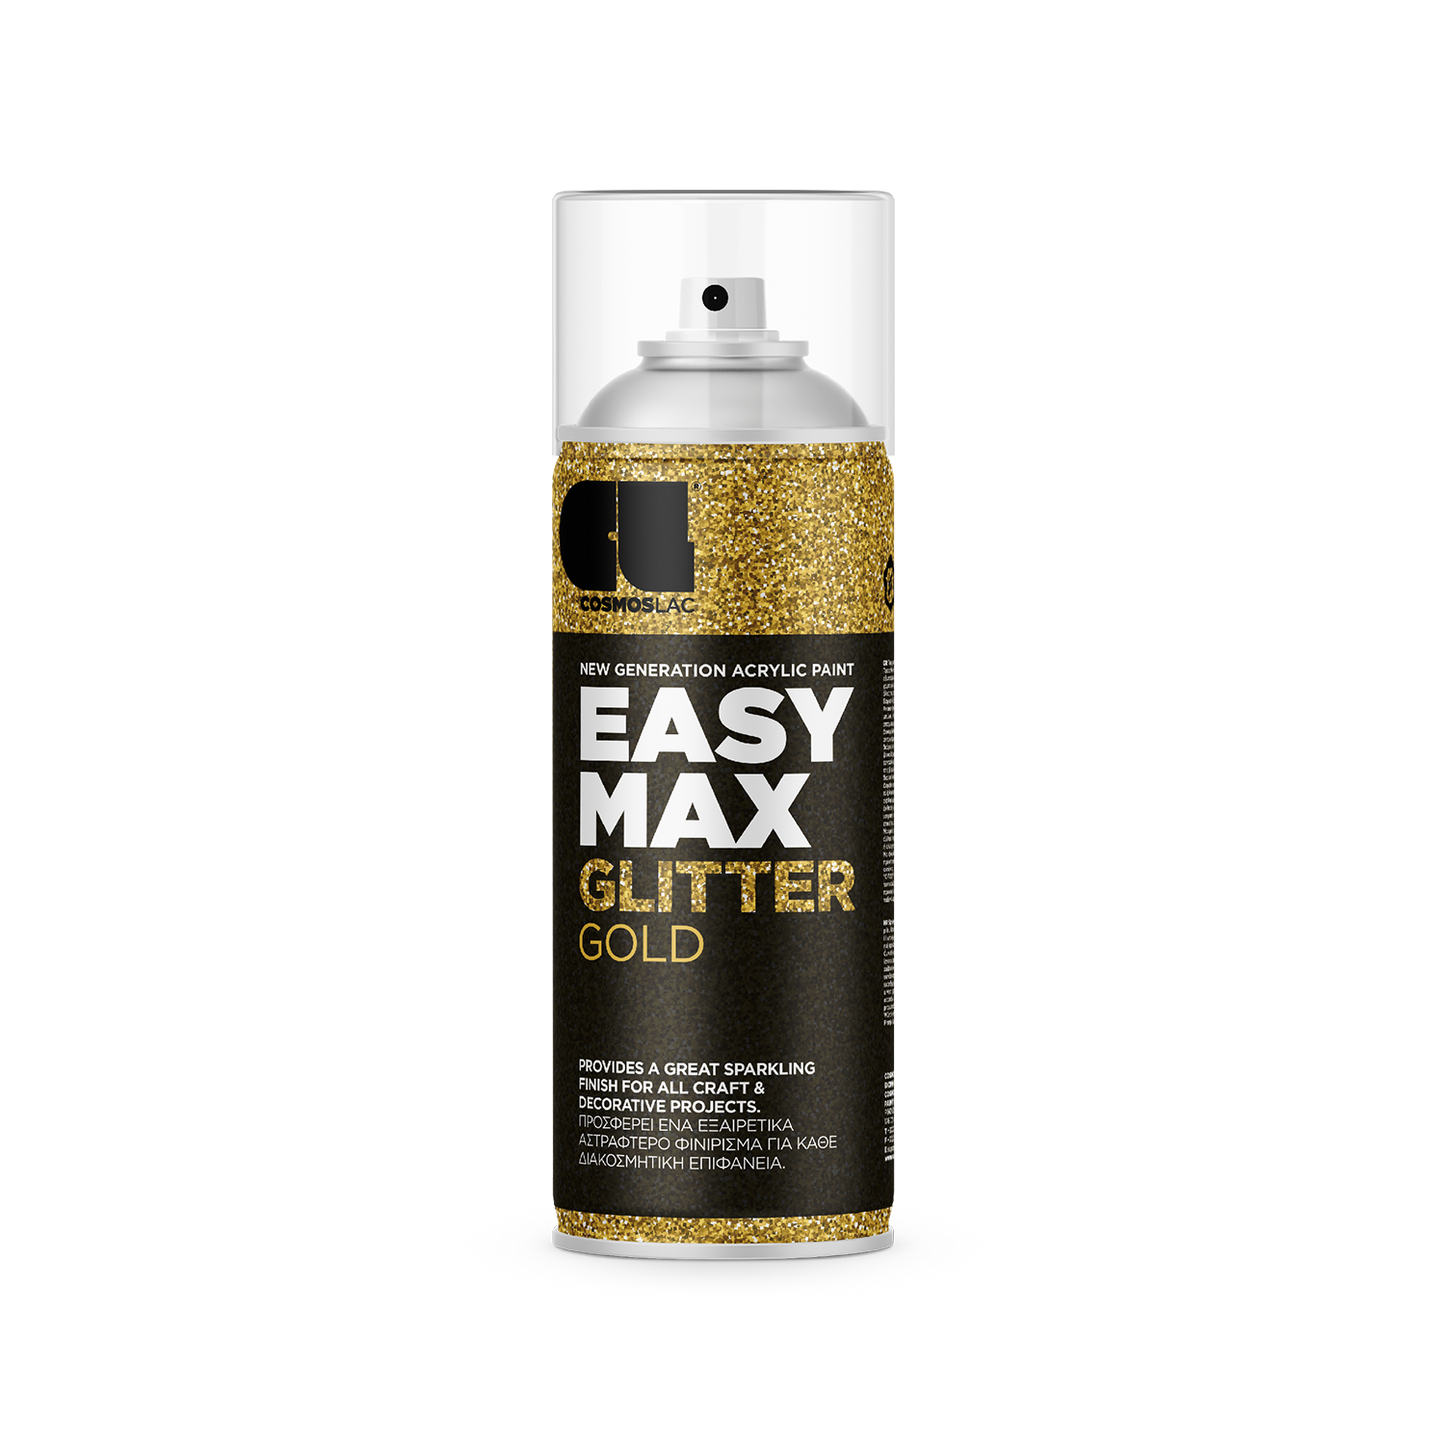 COSMOS LAC EASY MAX Premium Acryllack Sprühlack zum Upcycling und DIY Projekten von Möbeln und Dekoobjekten Schwarz goldene Sprühflasche